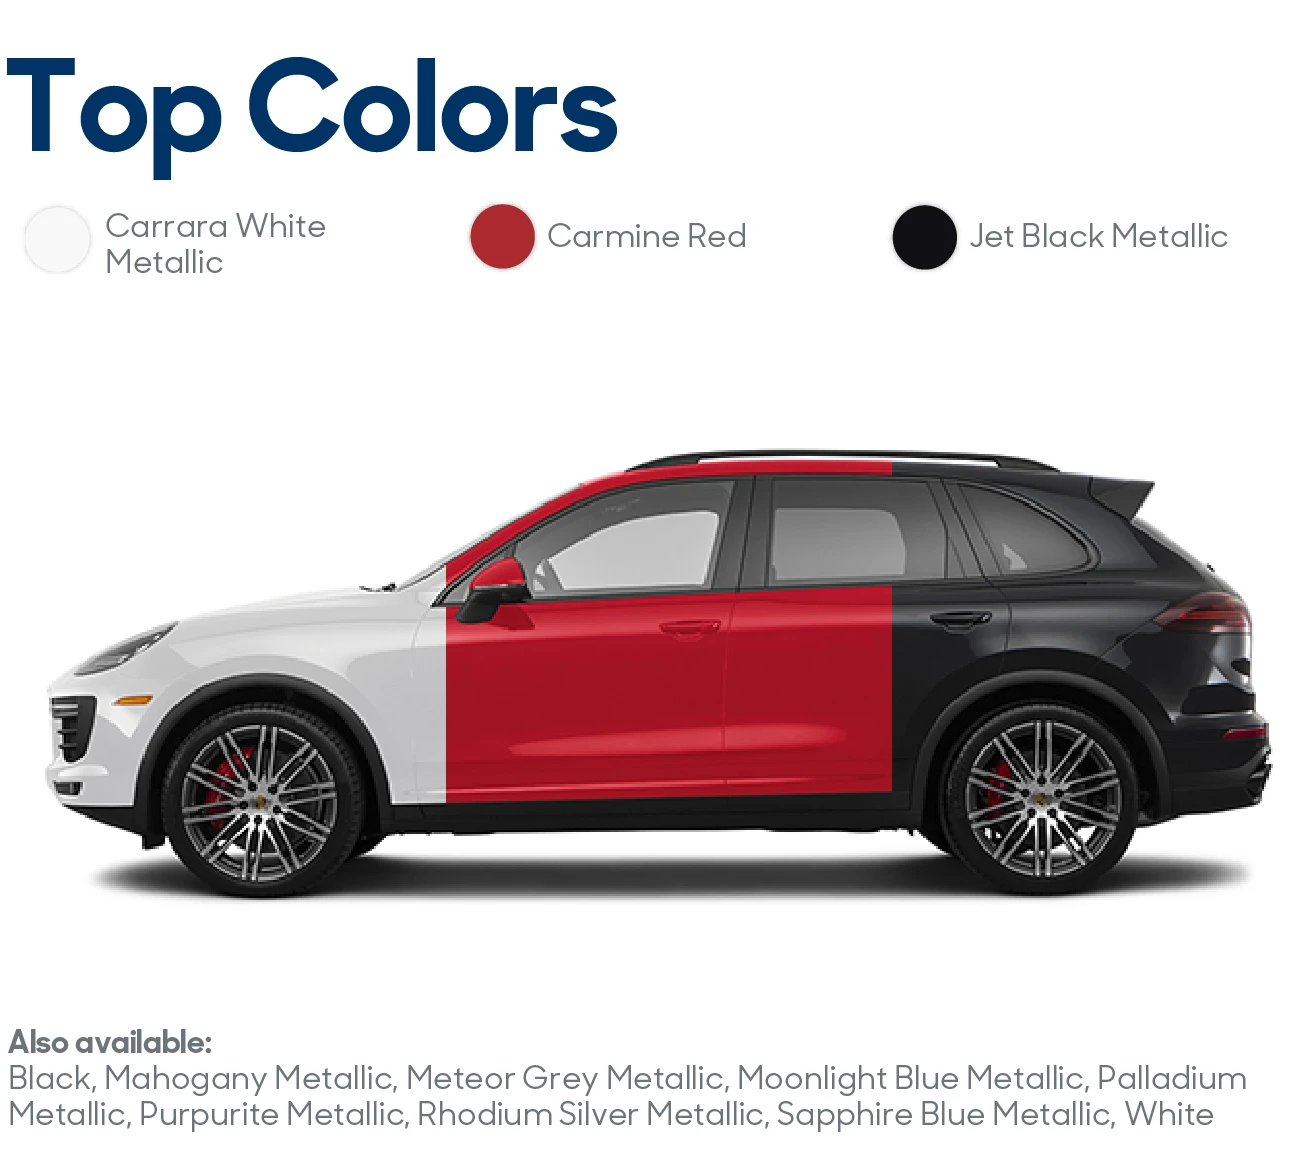 2017 Porsche Cayenne Review: Top Colors | CarMax